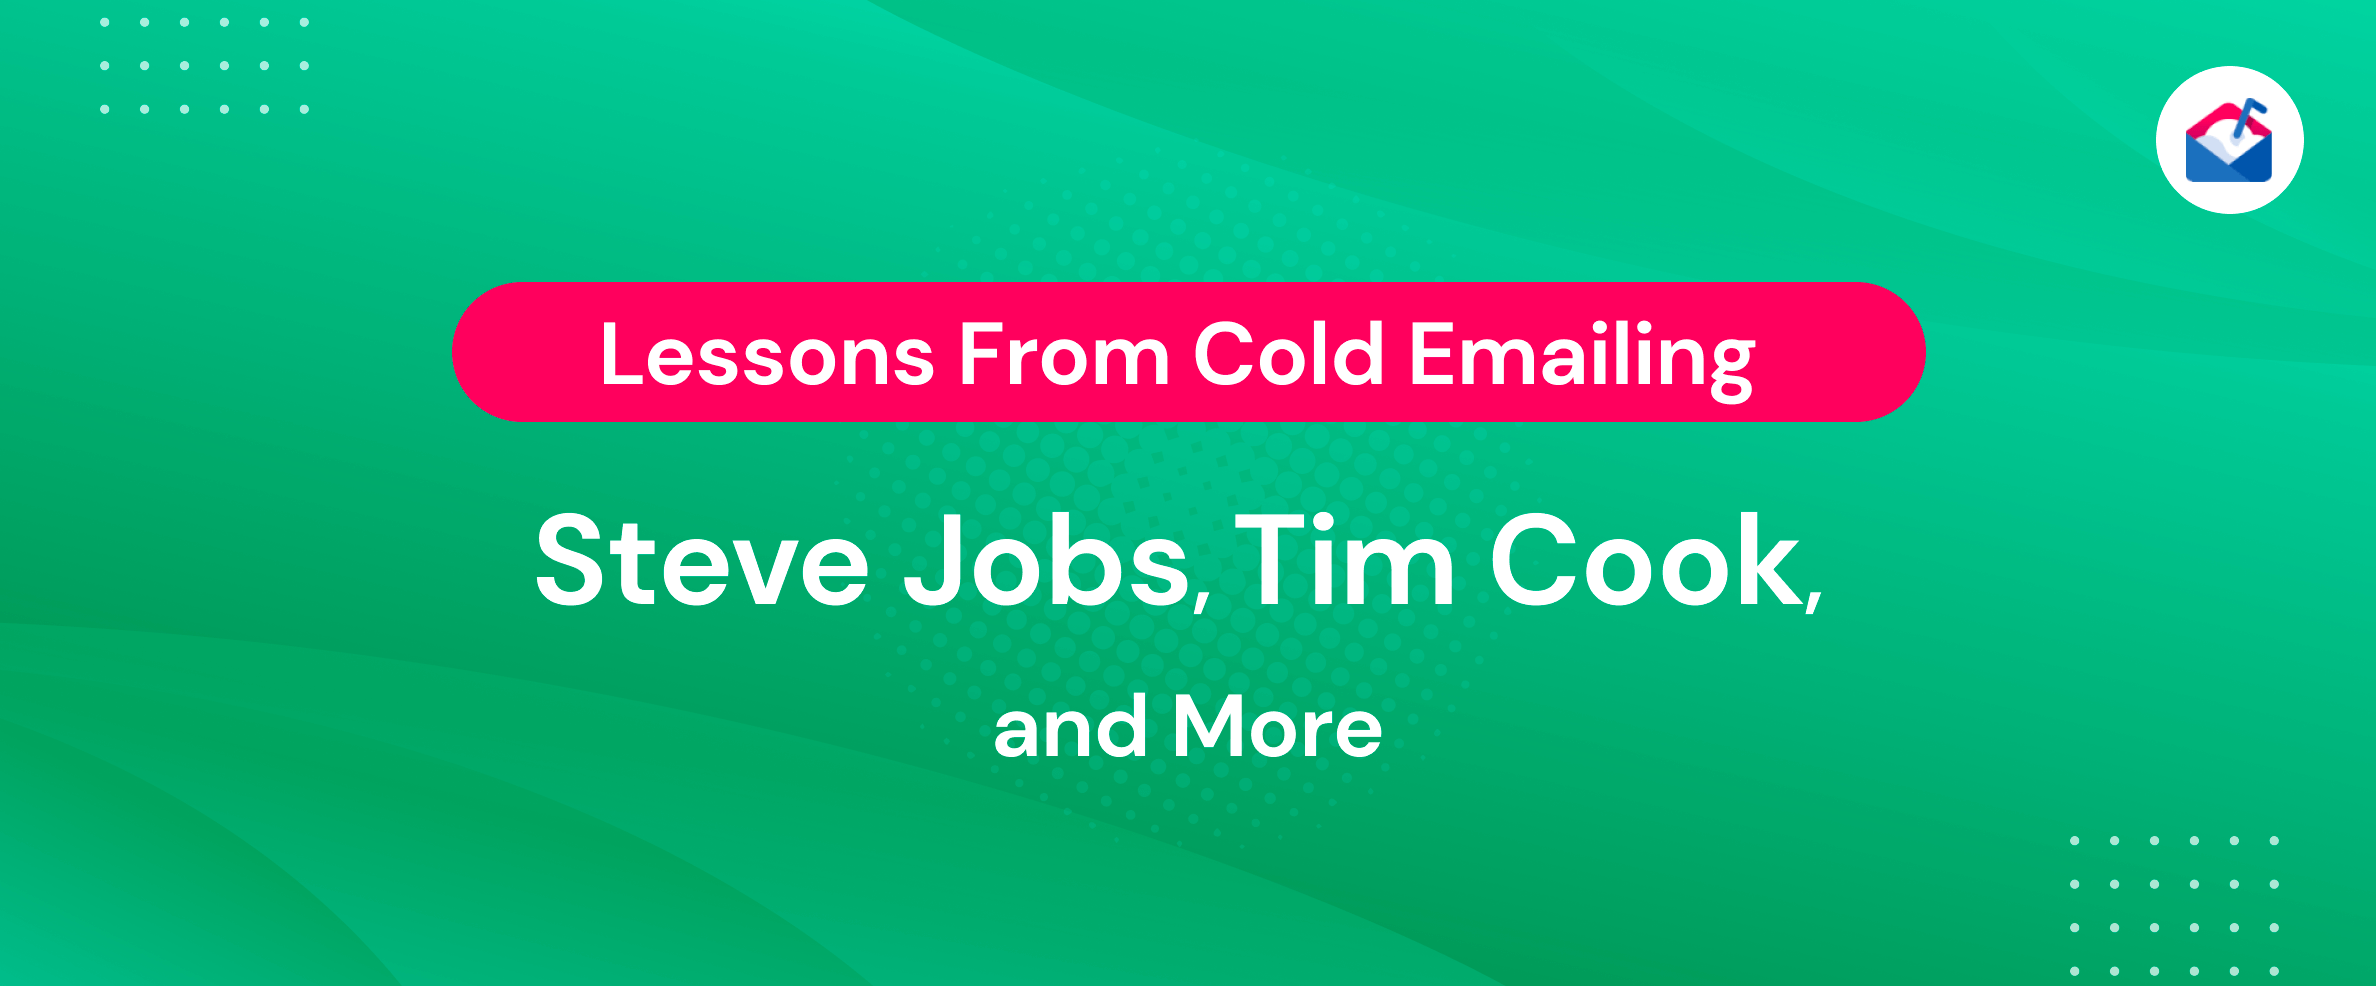 Leçons tirées des e-mails à froid de Steve Jobs, Tim Cook, etc.